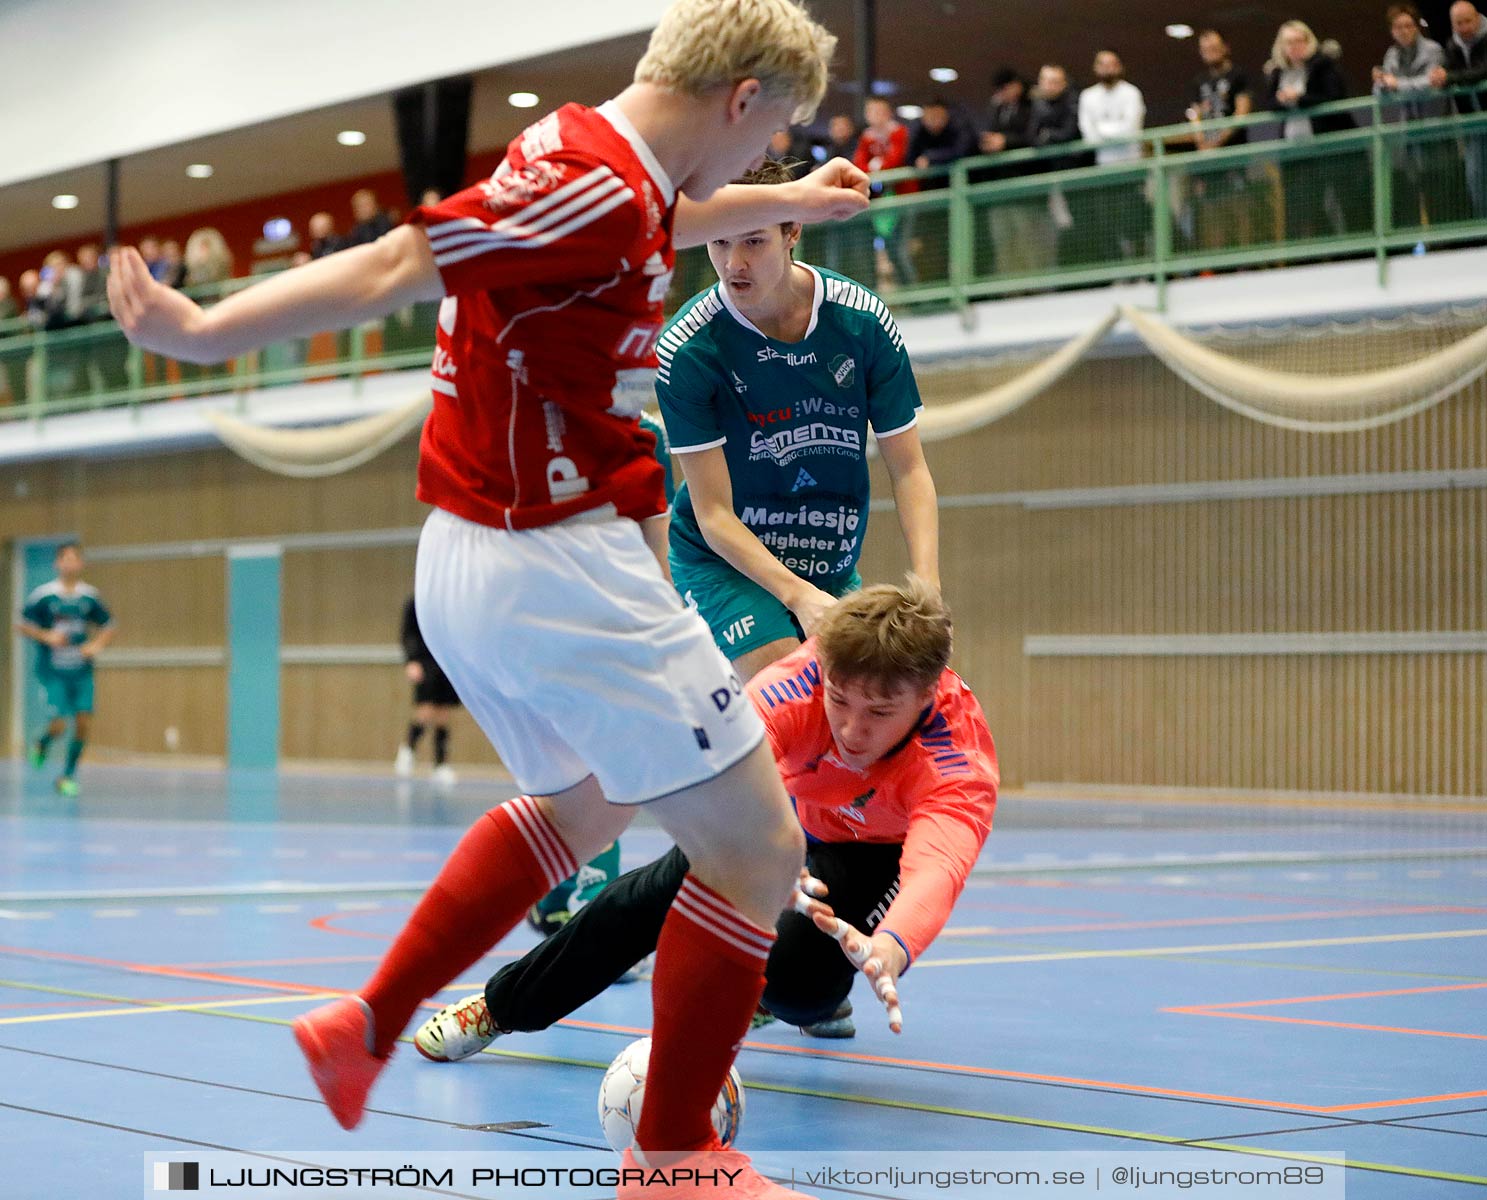 Skövde Futsalcup 2019 Herrar Vårgårda IK-Våmbs IF,herr,Arena Skövde,Skövde,Sverige,Futsal,,2019,227261